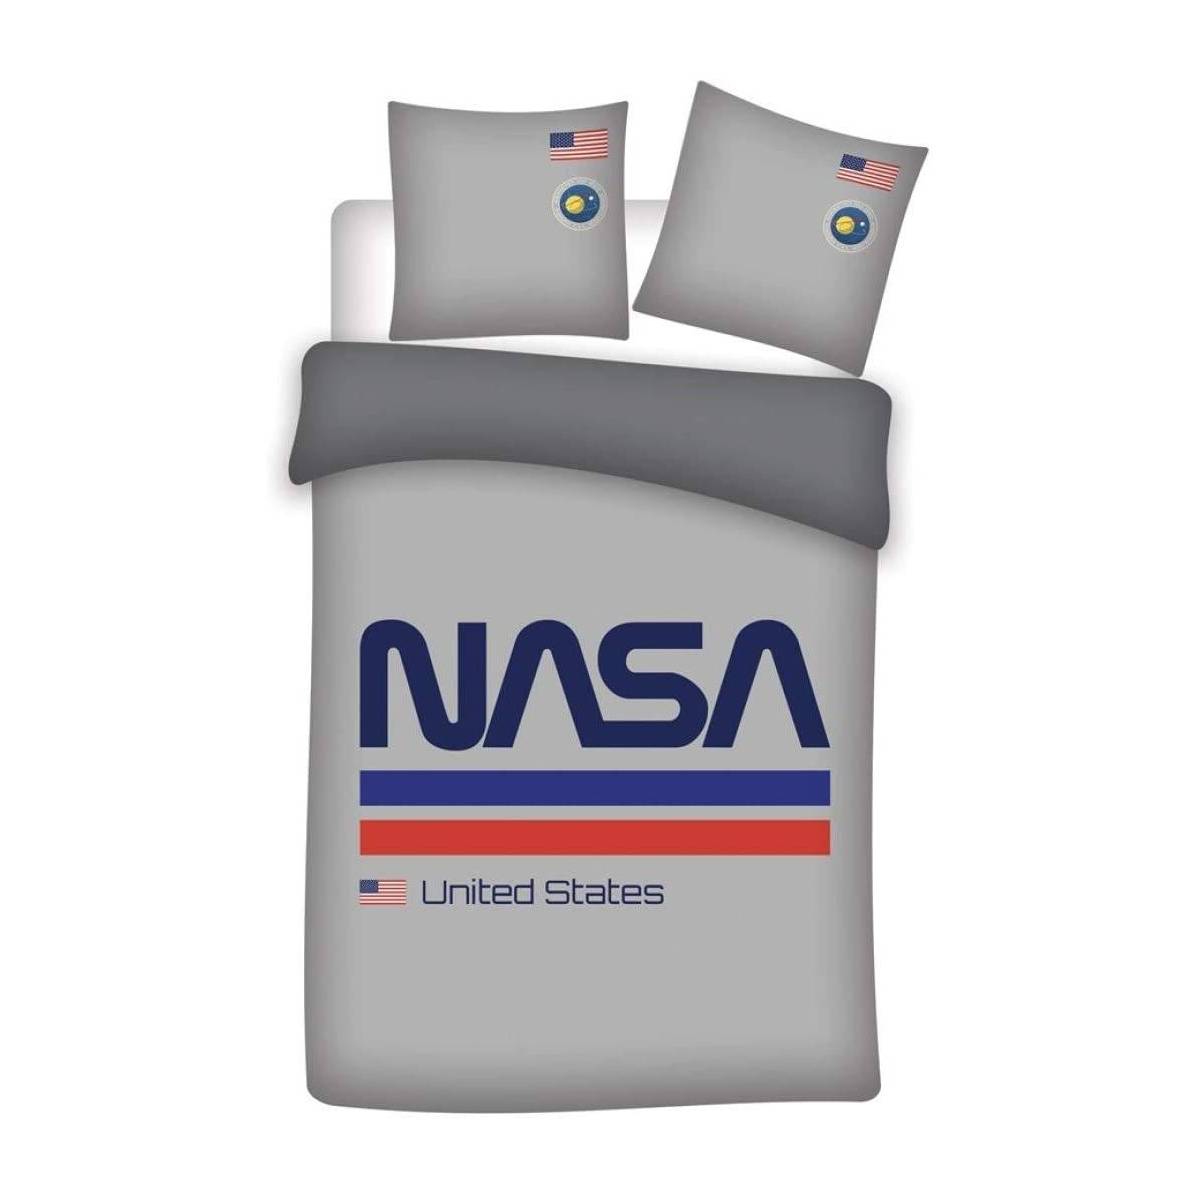 Housse de couette NASA Gris 140 x 200 cm + taie d'oreiller